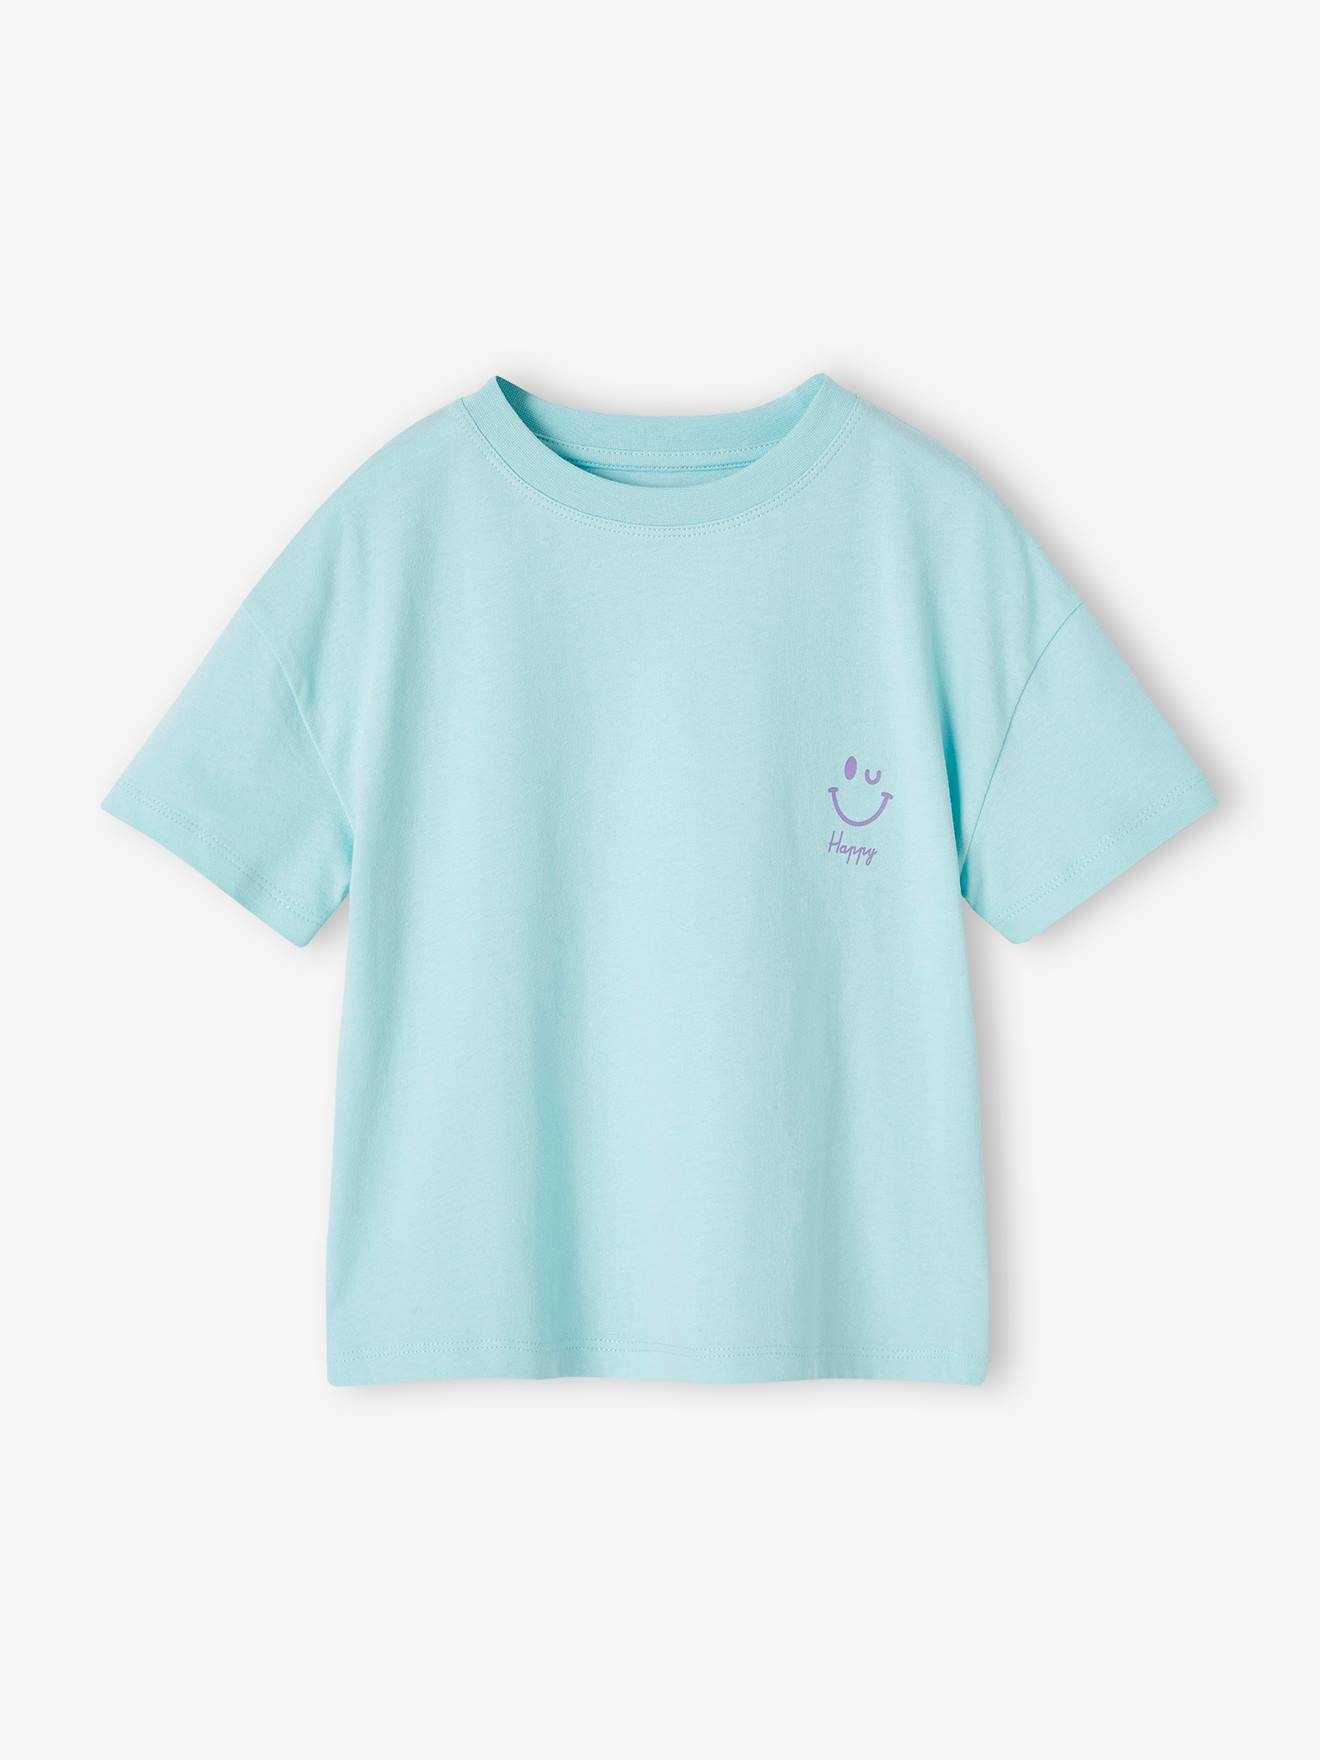 Plain Basics T-Shirt for Girls turquoise